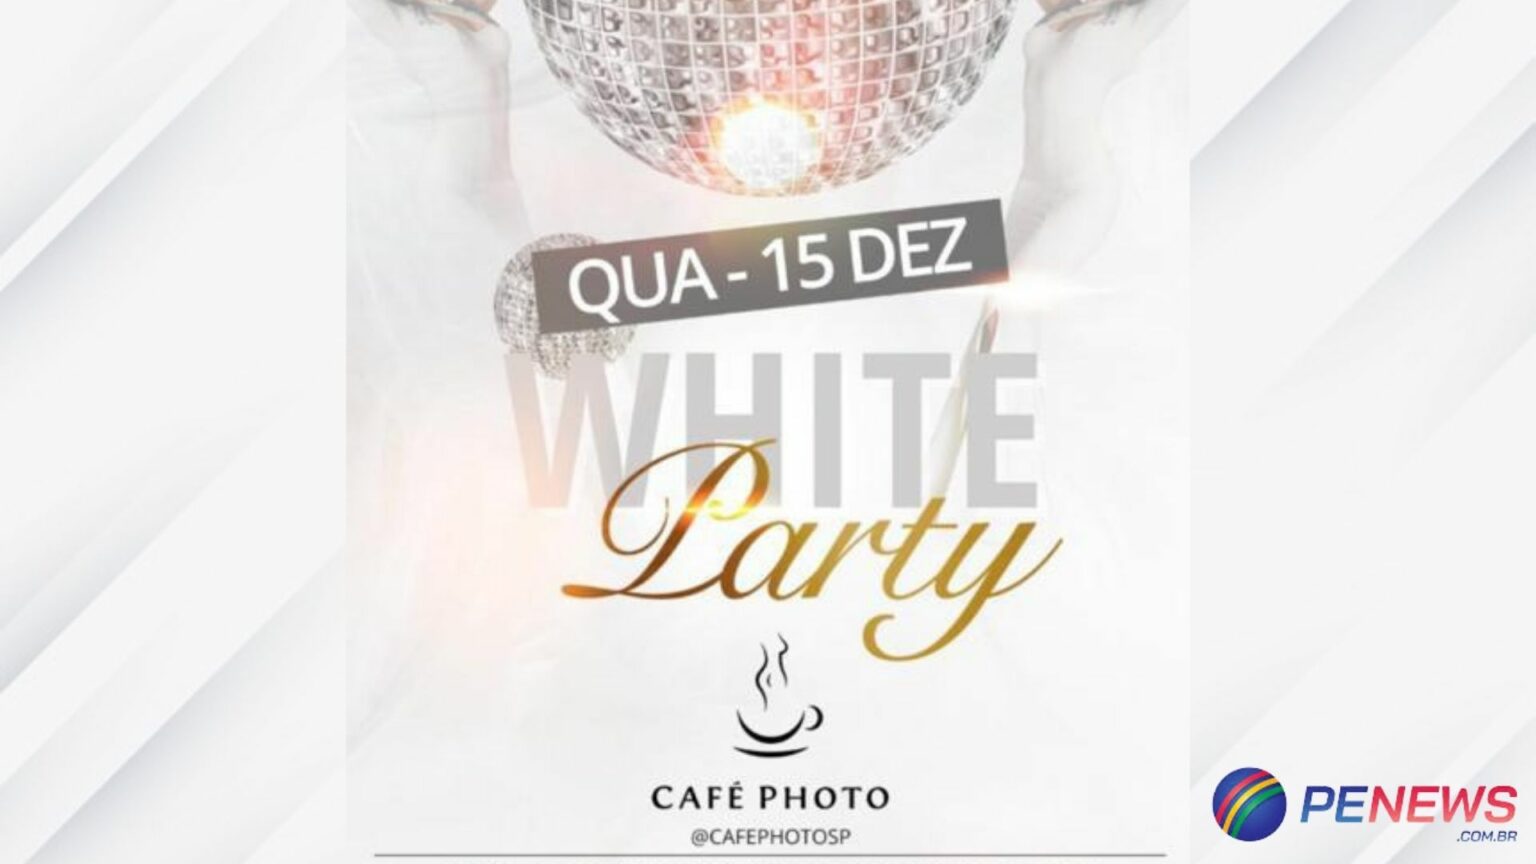 Café Photo realiza a ‘White Party’ com desfile de lingerie nesta quarta-feira (15)